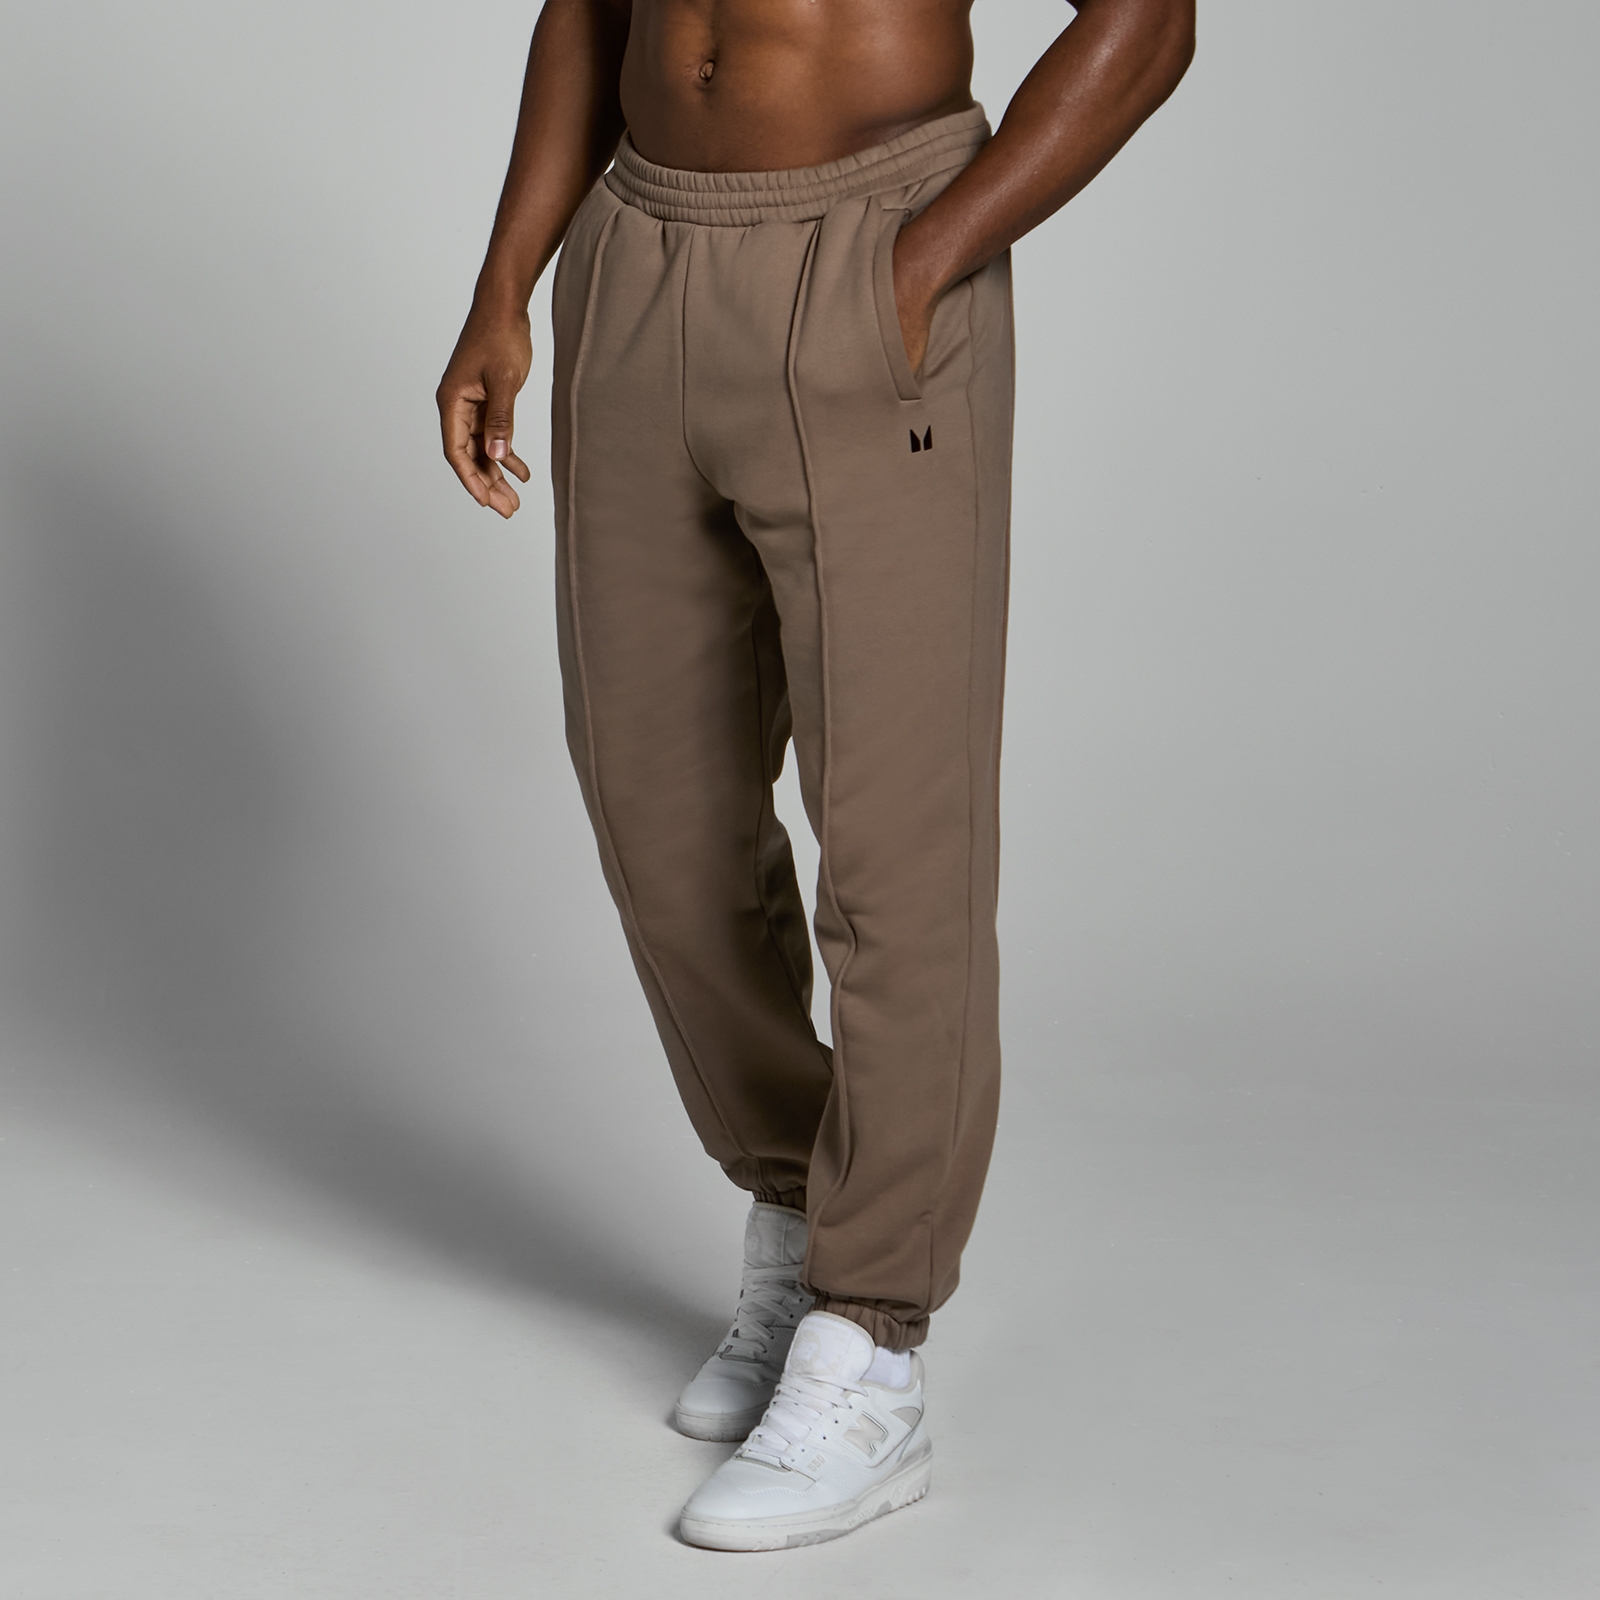 Image of Pantaloni da jogging pesanti oversize MP Lifestyle da uomo - Marrone chiaro - XXL